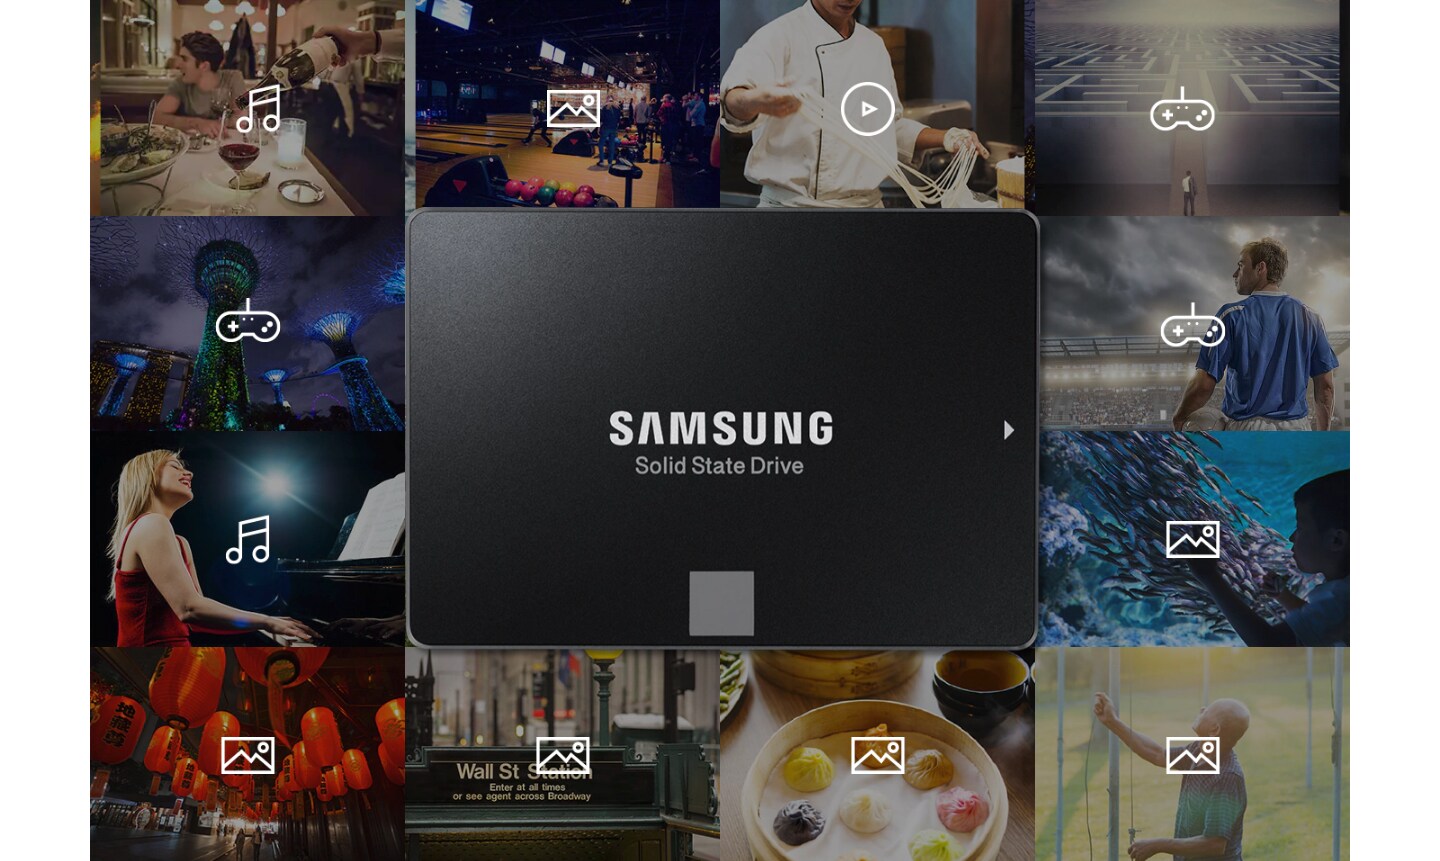 Η Samsung SSD συνδέεται με πληροφορίες όπως μουσική, φωτογραφίες, βίντεο και παιχνίδια που προκύπτουν από διάφορες καθημερινές δραστηριότητες (επιδόσεις, αθλητισμός, μαγείρεμα, φαγητό, υπαίθριες δραστηριότητες κ.λπ.)